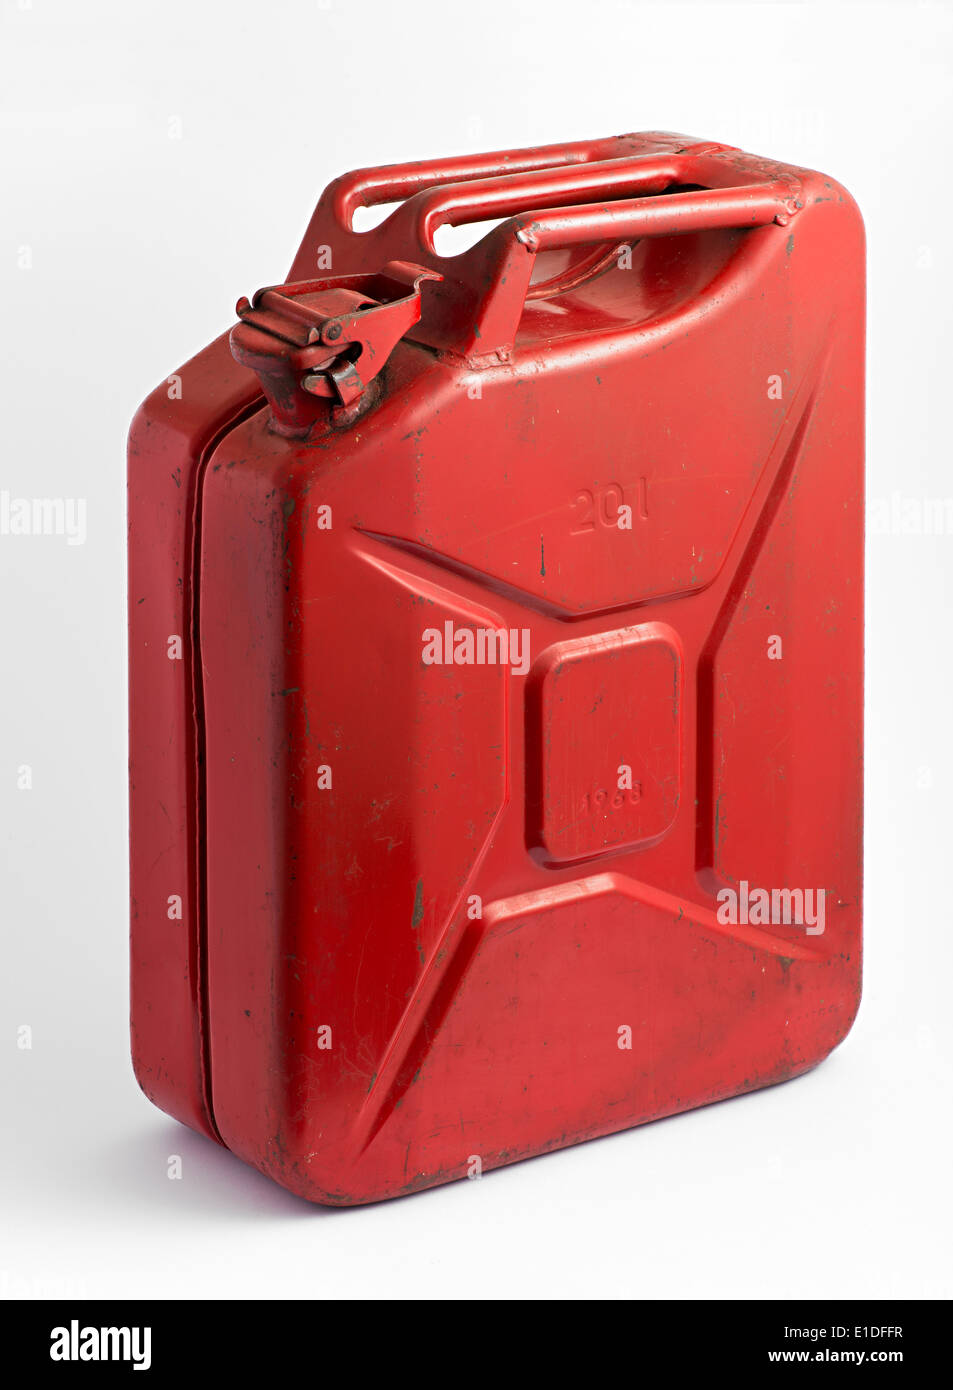 Rot Metall Tank oder Kanister für Transport und Lagerung von